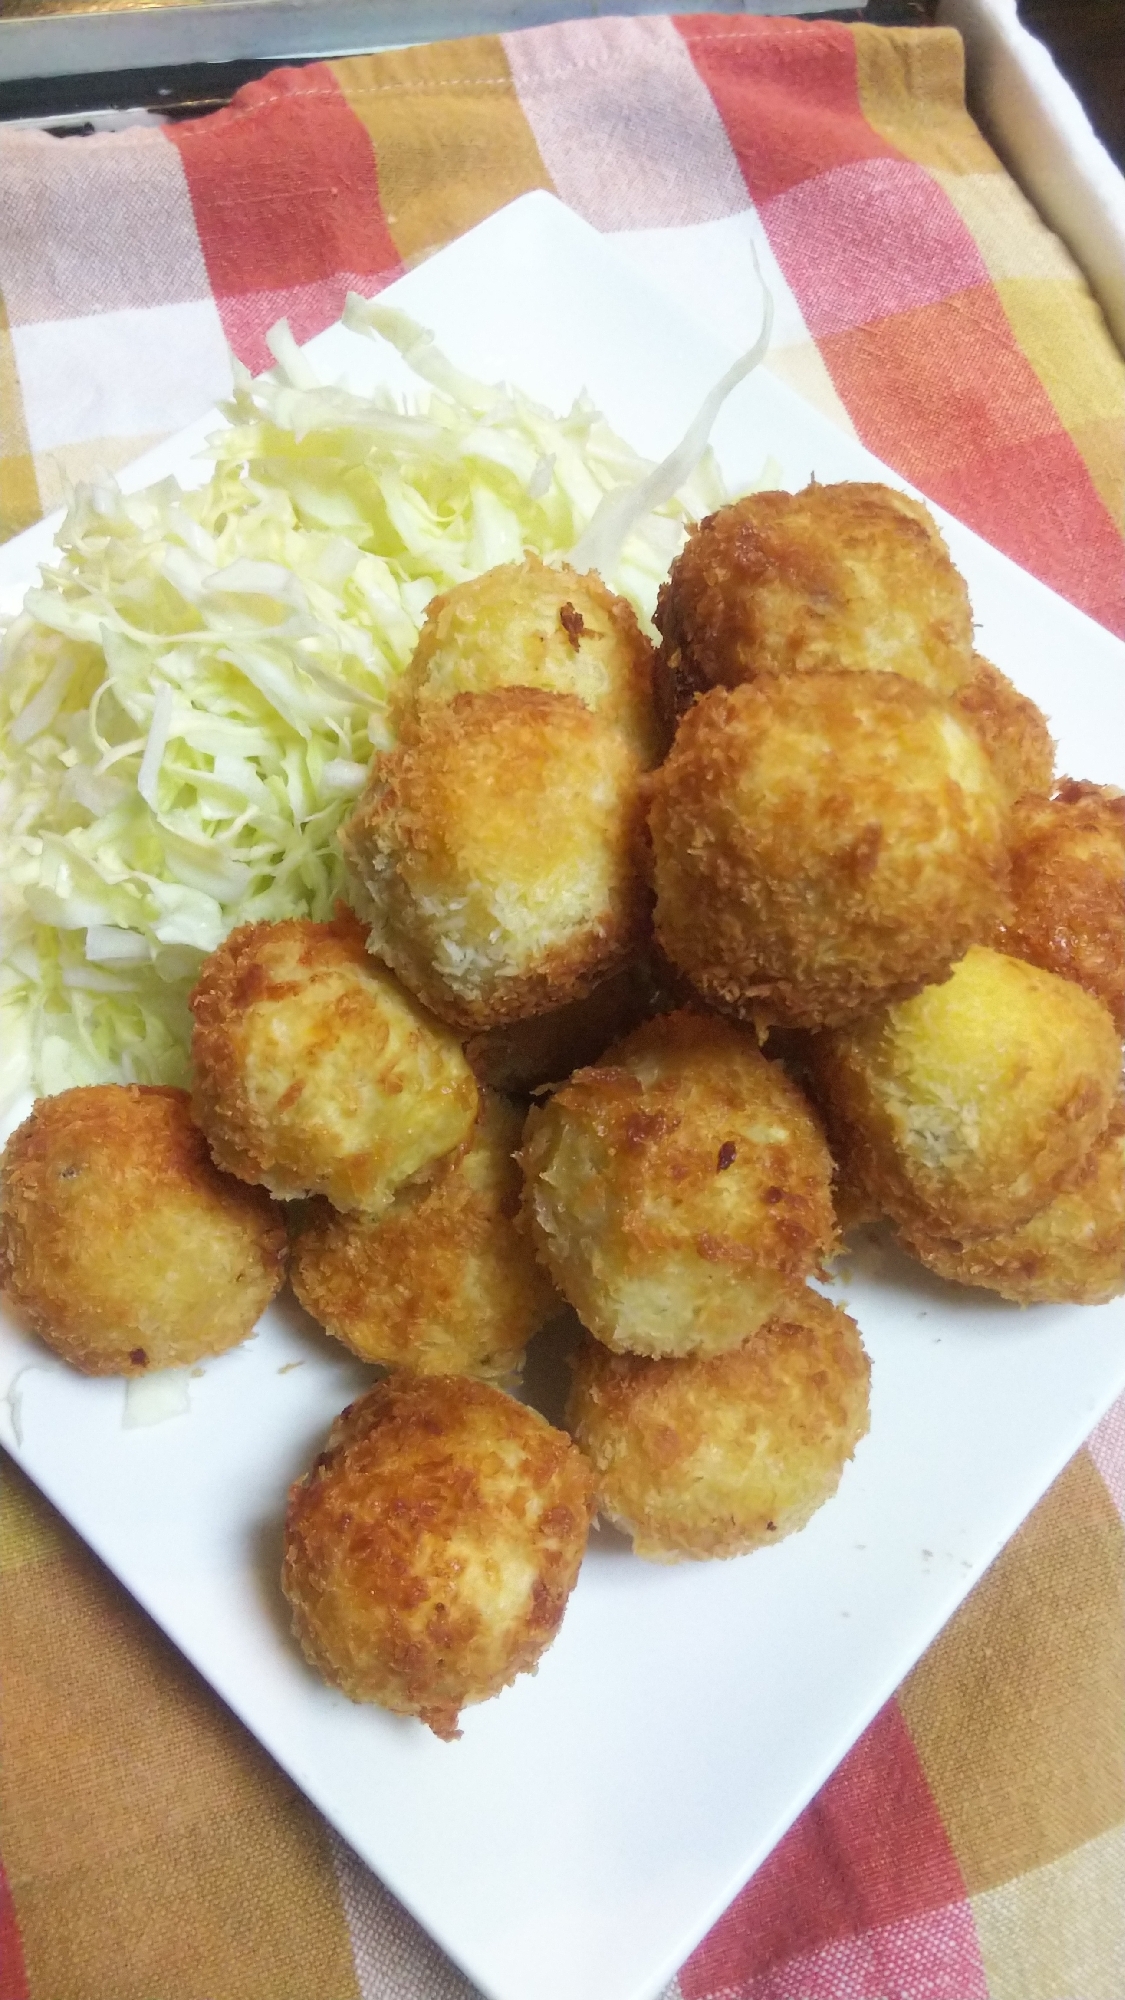 コロコロ☆さつま芋コロッケinチーズ